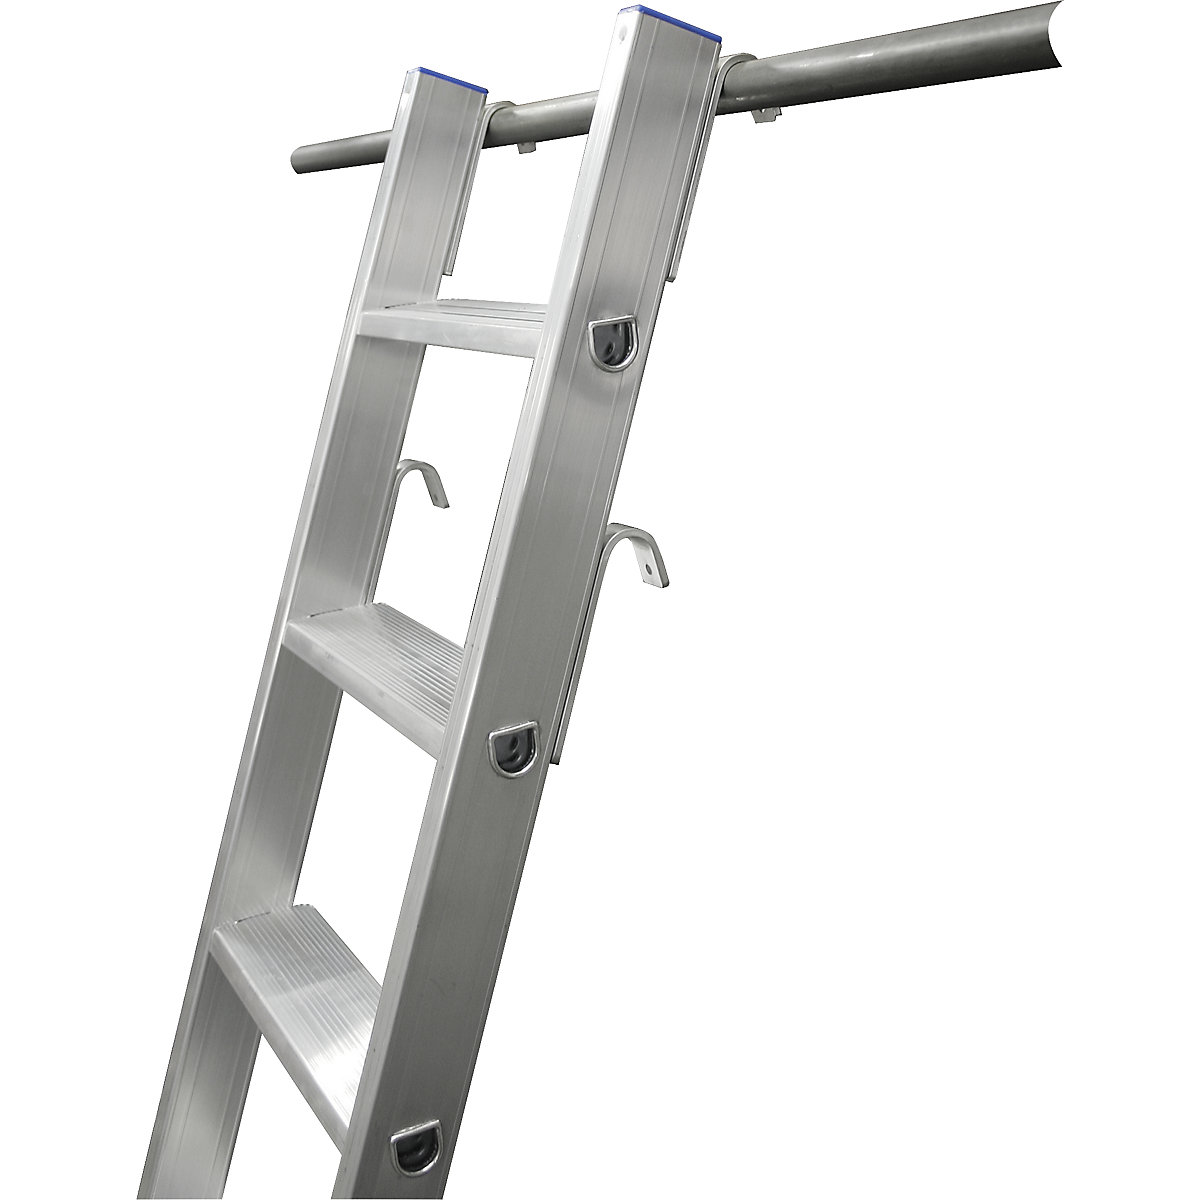 KRAUSE – Step shelf ladder (Product illustration 7)